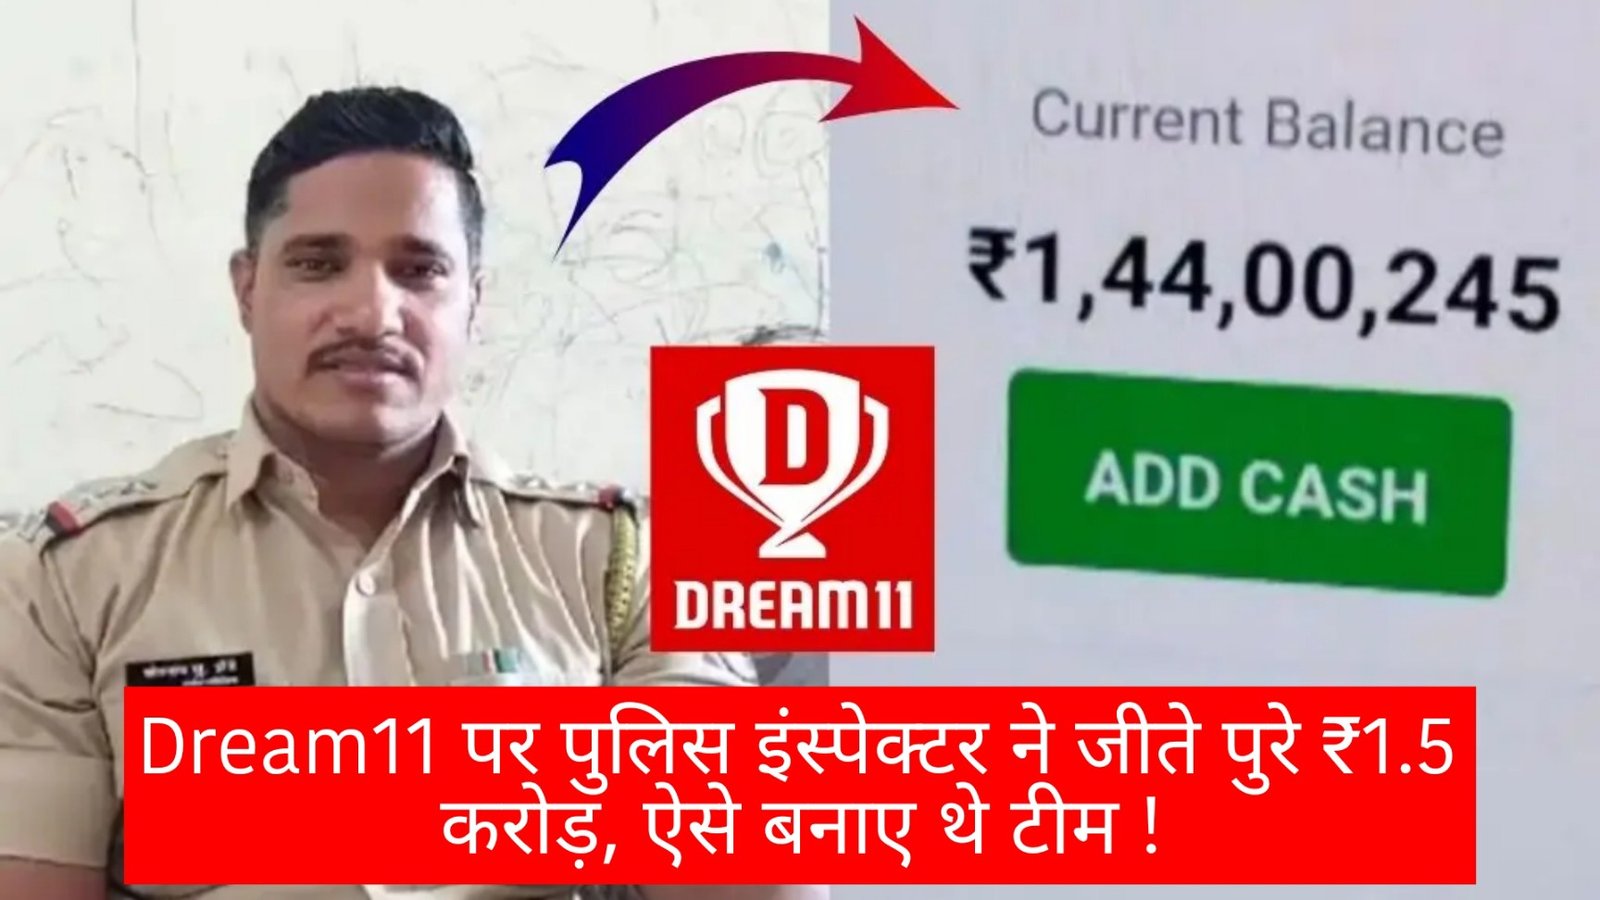 Dream11 पर पुलिस इंस्पेक्टर ने जीते पुरे ₹1.5 करोड़, मीडिया के सामने बताया रैंक 1 का सीक्रेट, अब ऐसे लाओ फर्स्ट रैंक!